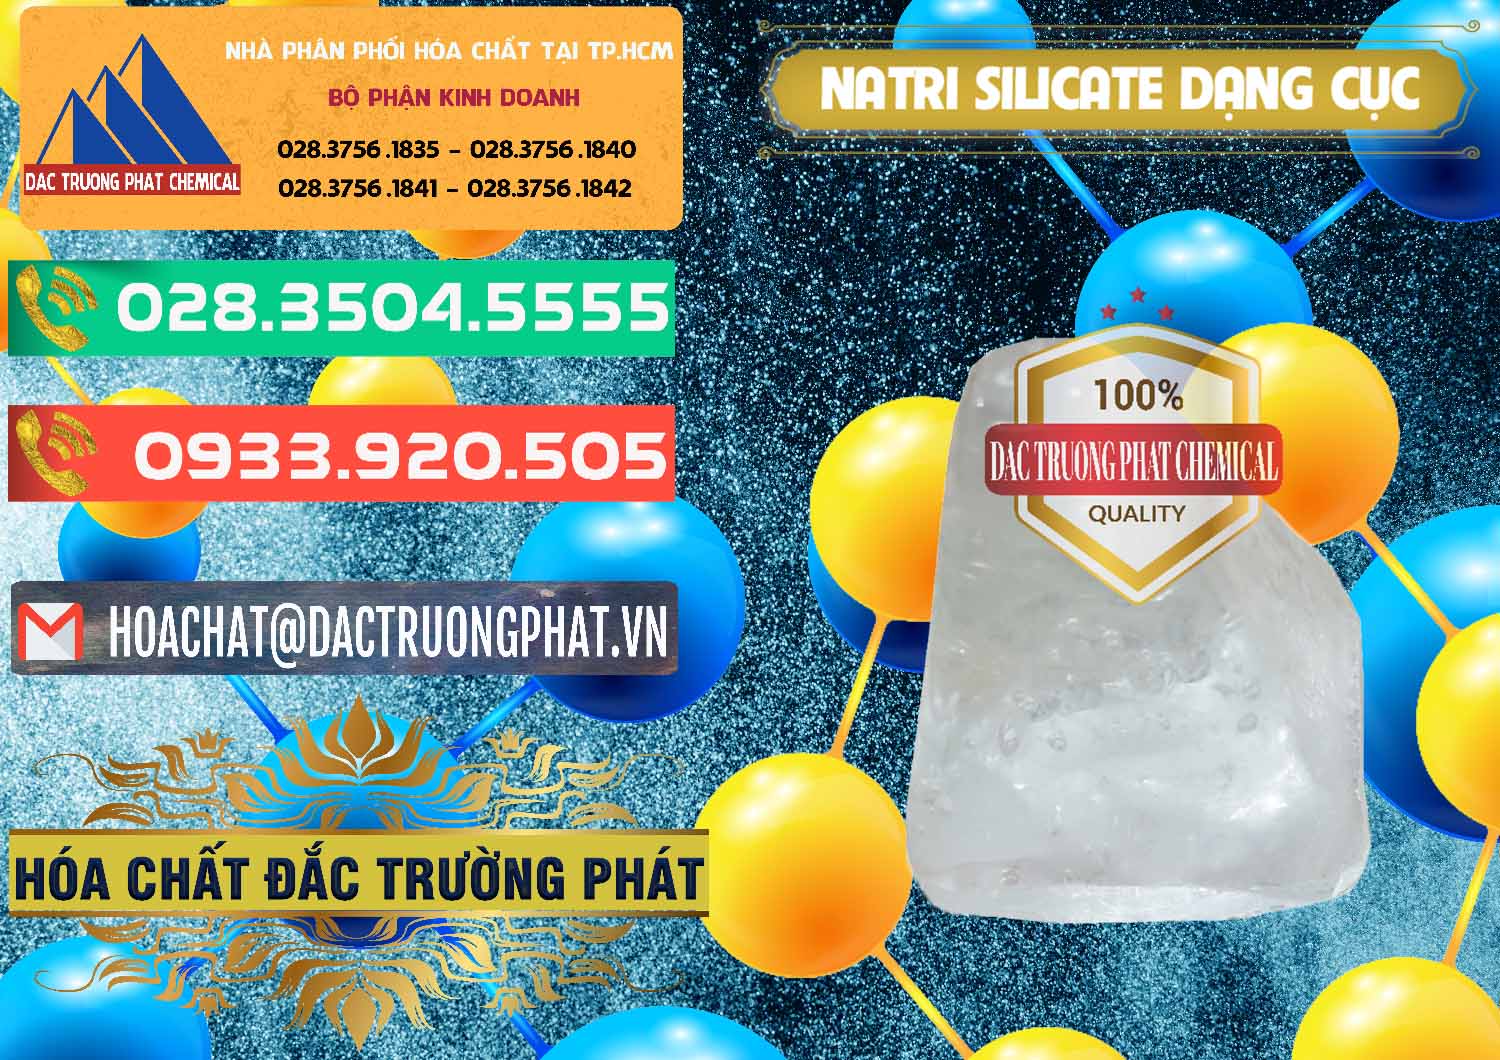 Chuyên kinh doanh - bán Natri Silicate - Na2SiO3 - Keo Silicate Dạng Cục Ấn Độ India - 0382 - Nhà phân phối và cung cấp hóa chất tại TP.HCM - congtyhoachat.com.vn